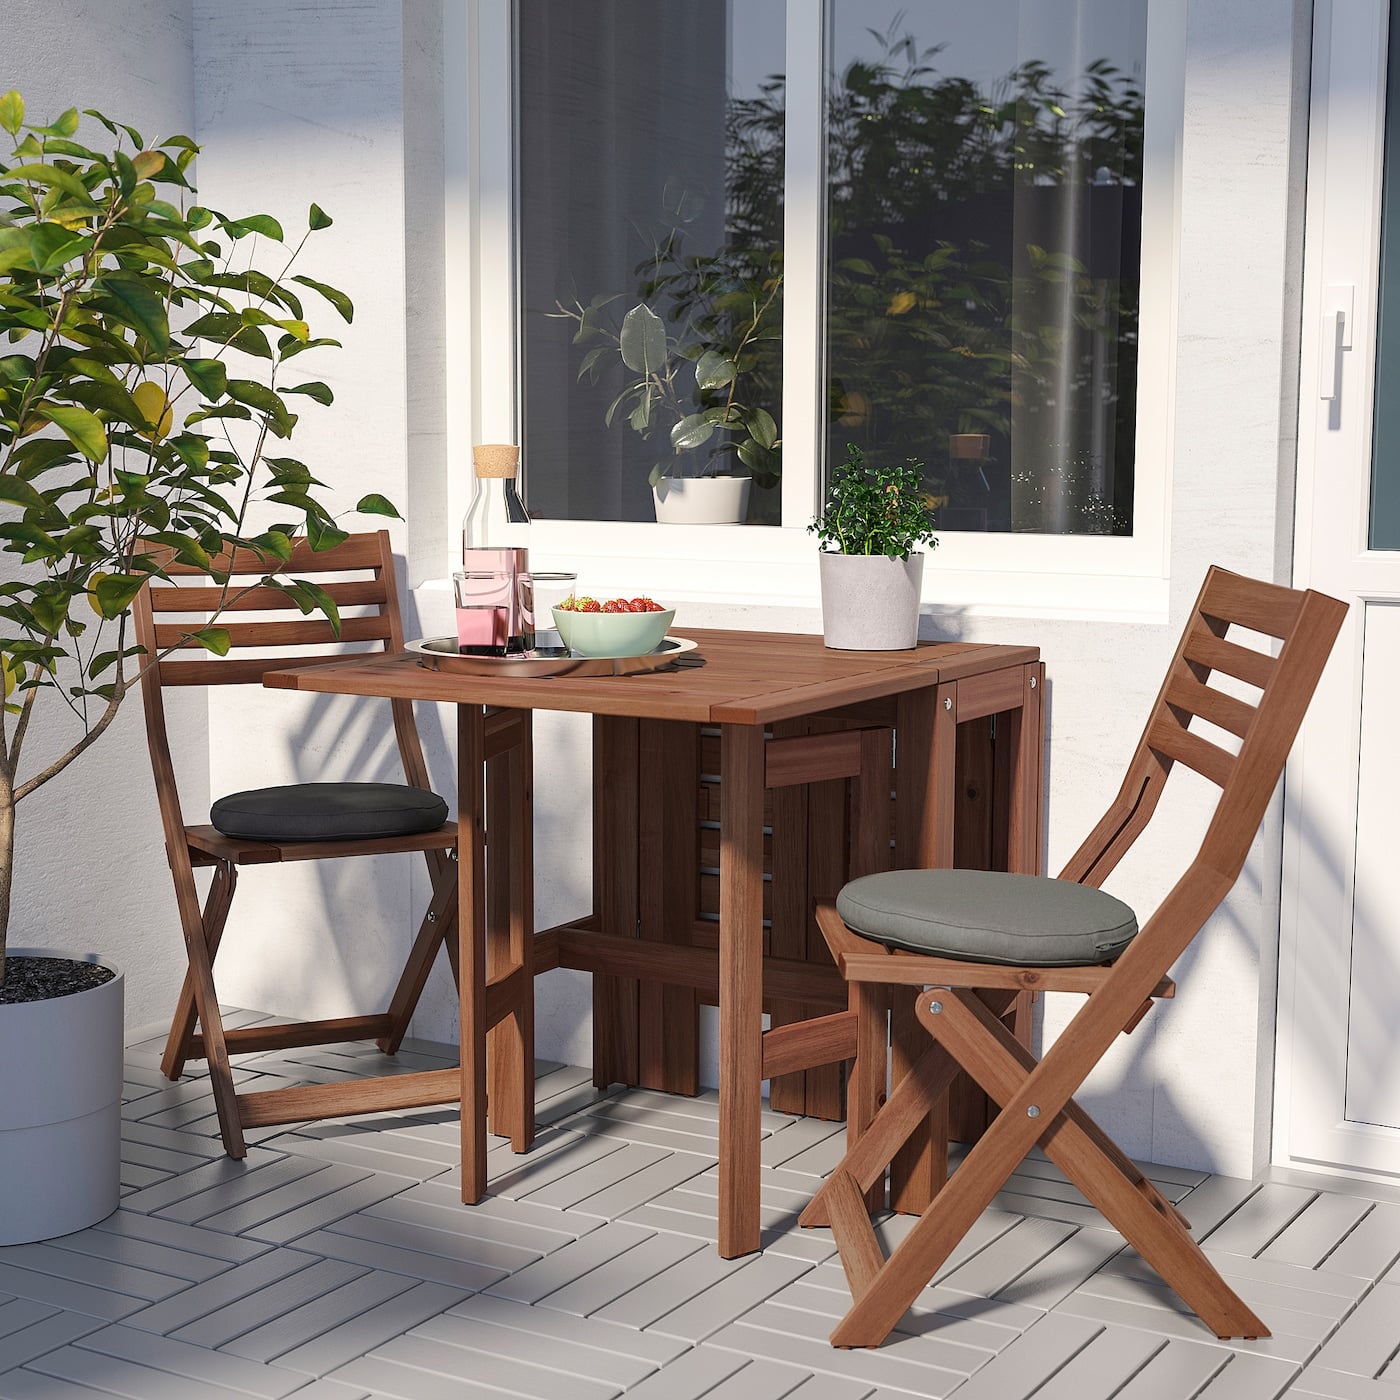 oogopslag voordeel Ontcijferen Best Ikea Outdoor Furniture For Small Spaces | POPSUGAR Home